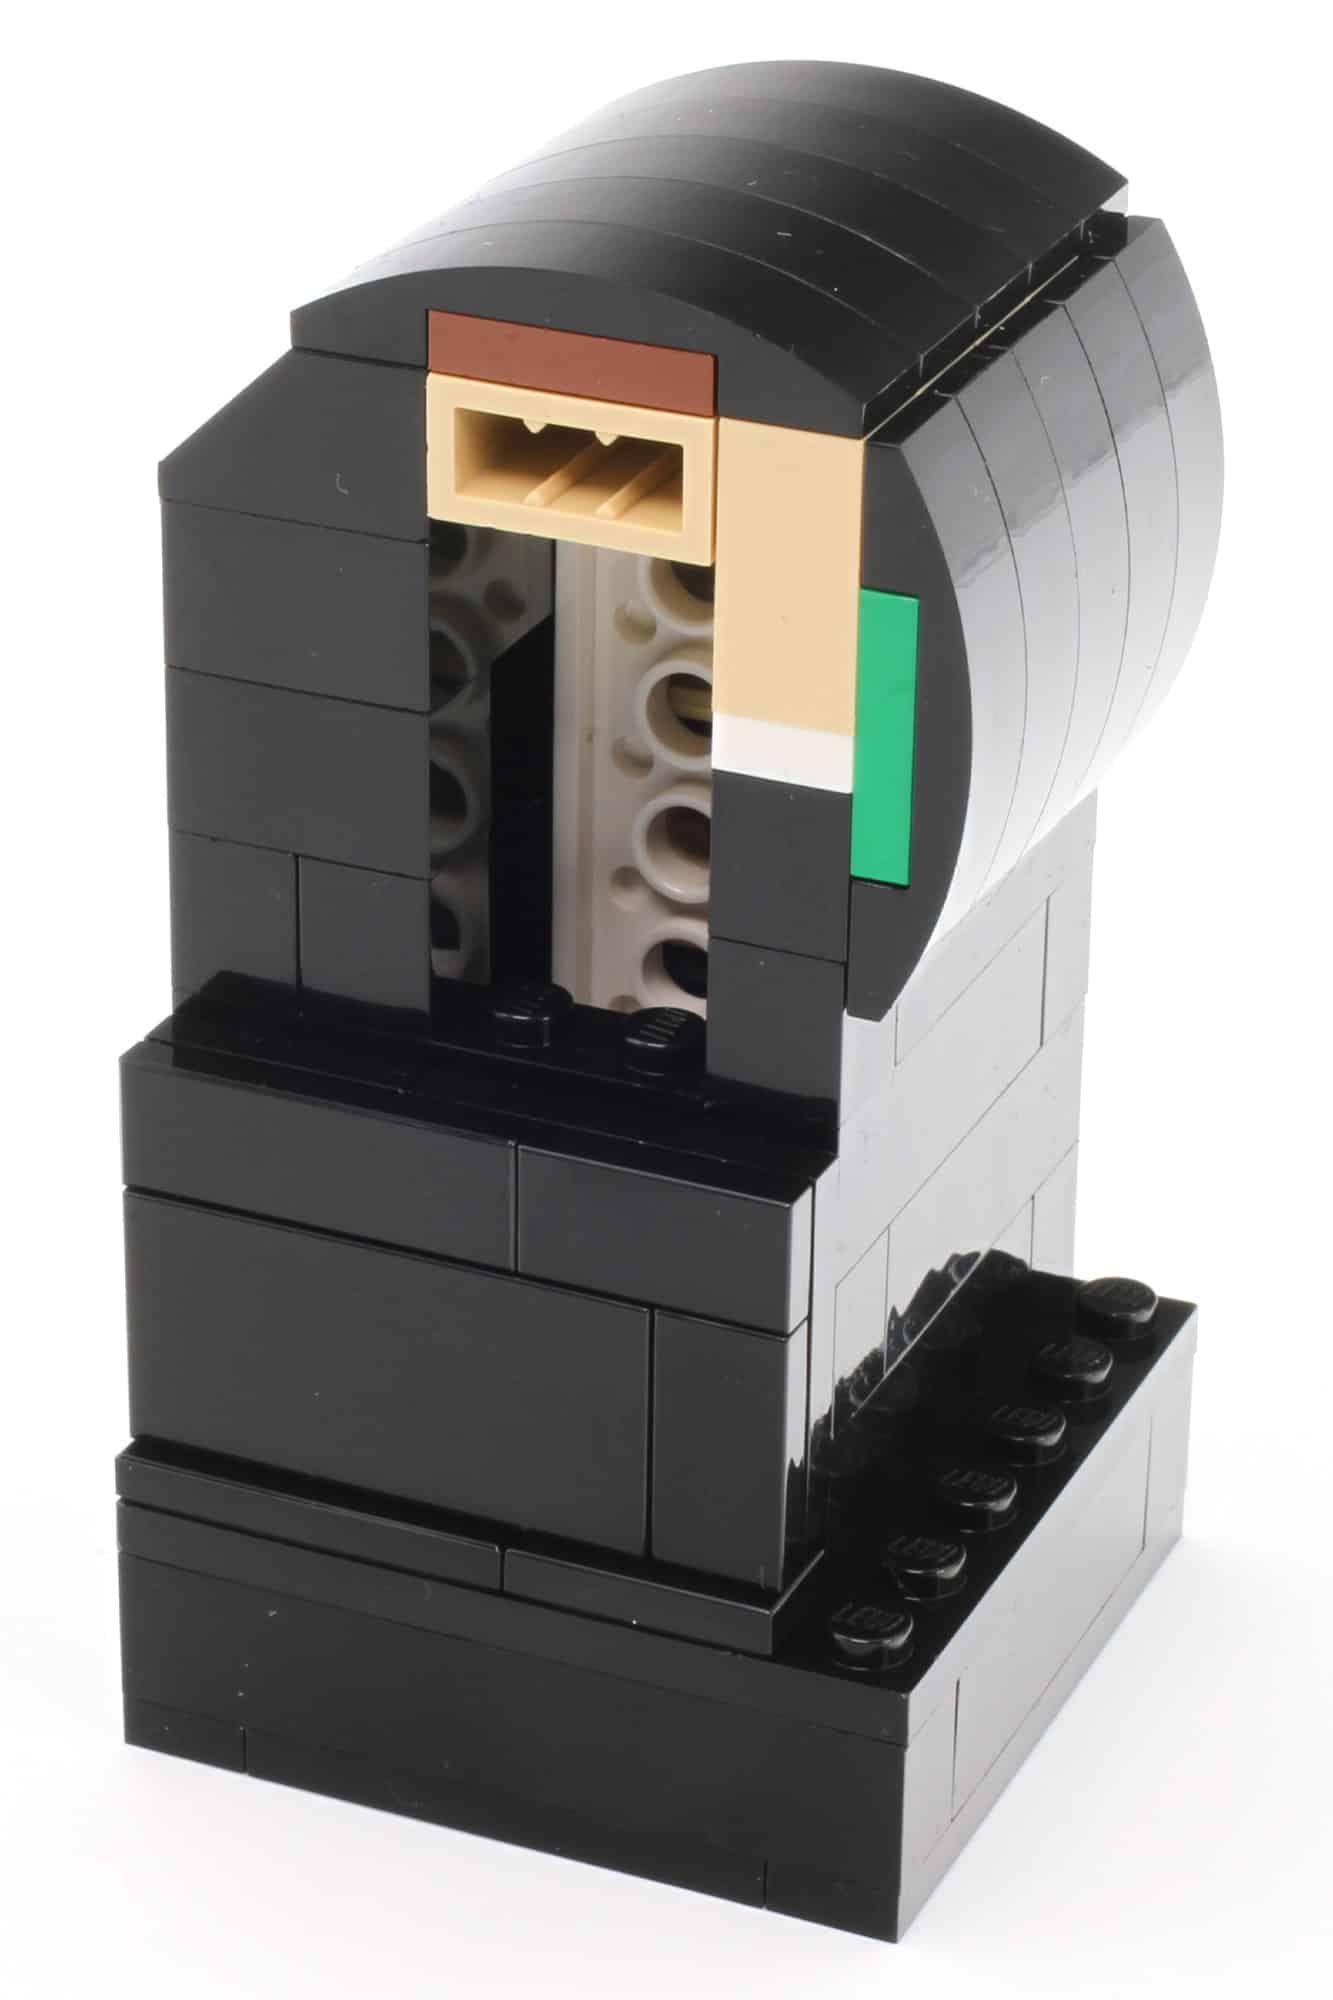 LEGO 40504 Hommage An Eine Minifigur Review (76)